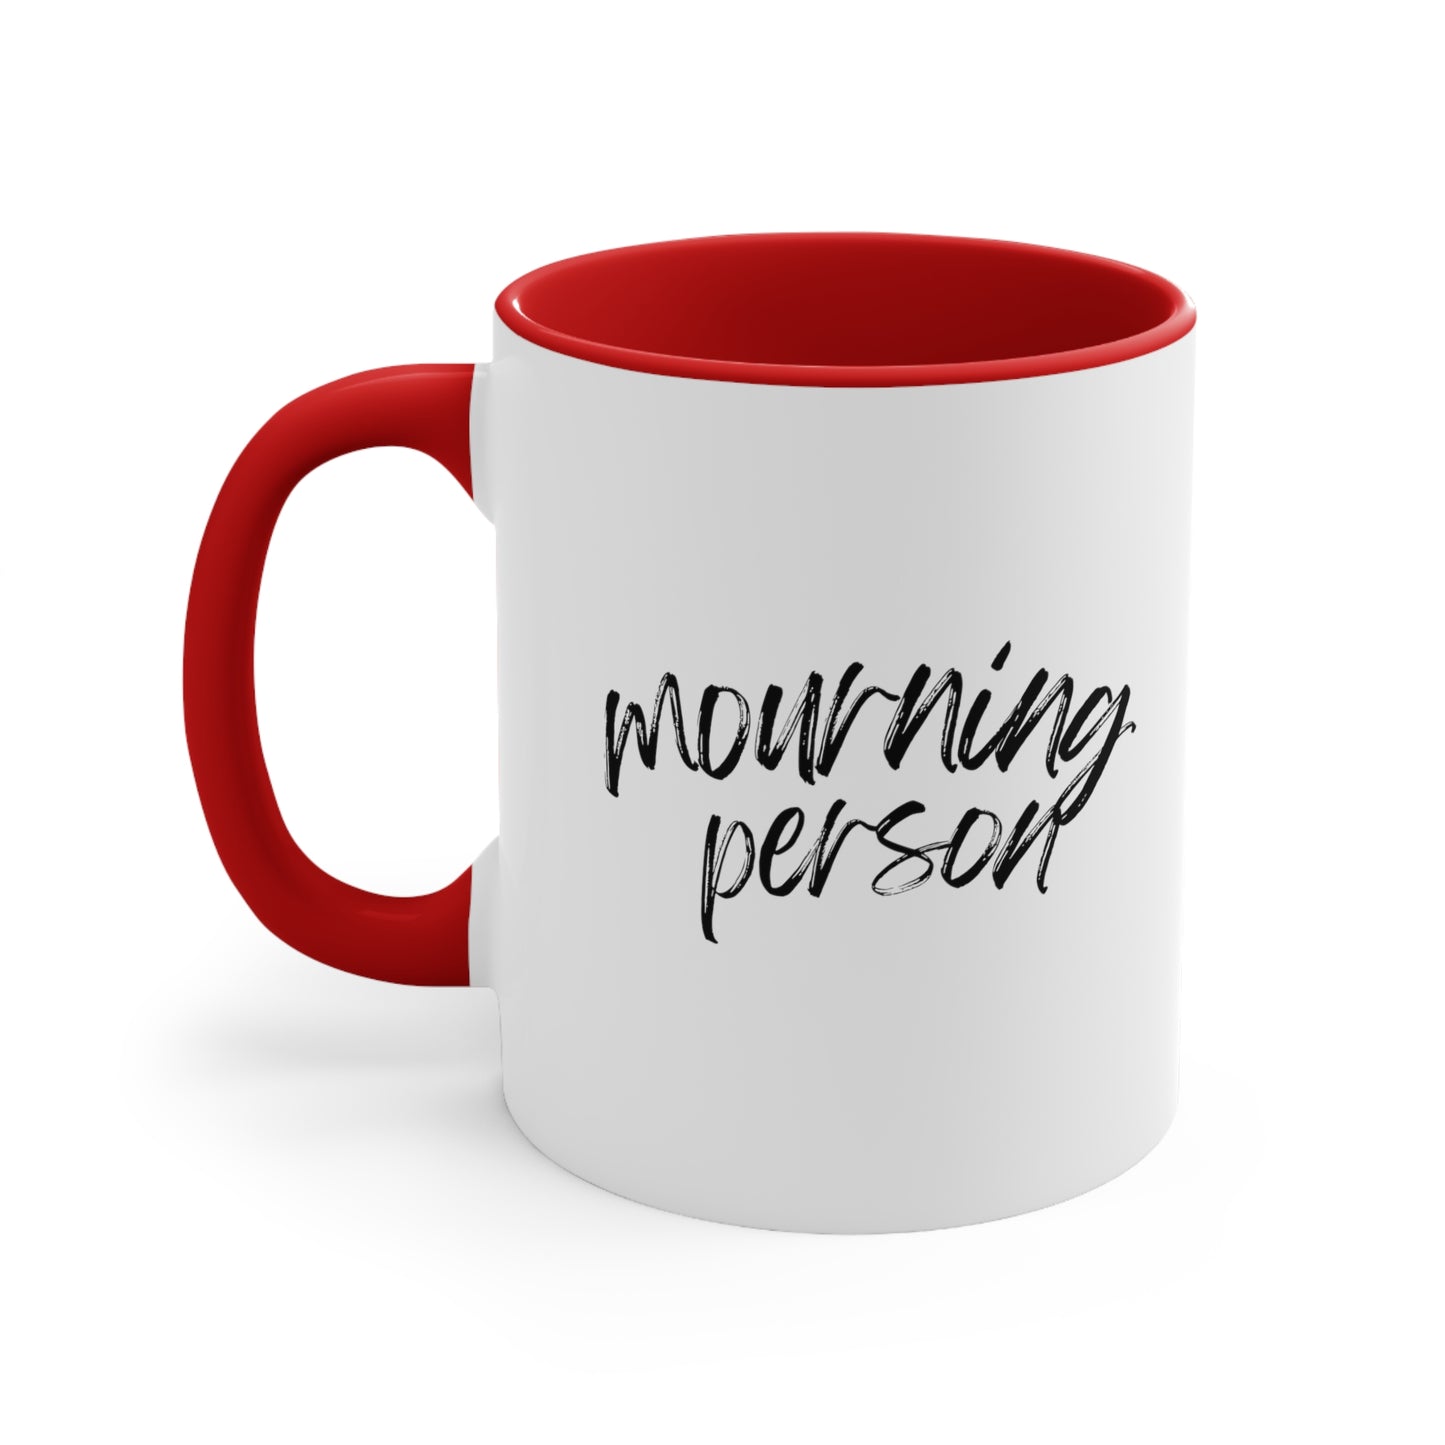 Mourning Person | 11oz Mug